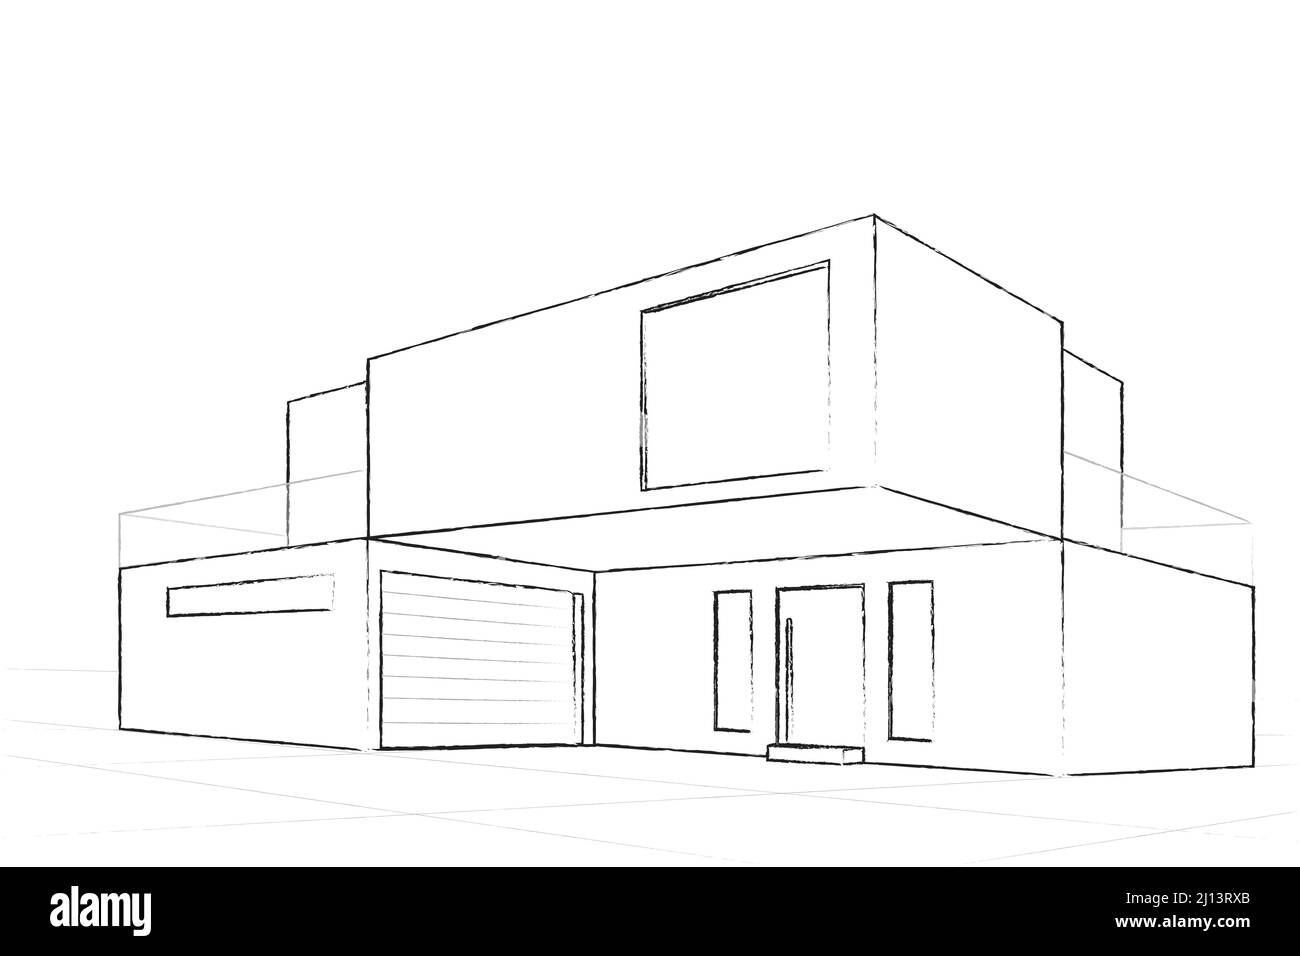 Entwurf für ein modernes Gebäude. Architektonischer Plan eines modernen Hauses. Konstruktion Perspektive Architektur Gestaltung Linie Kunst Hintergrund. Vektorillust Stock Vektor